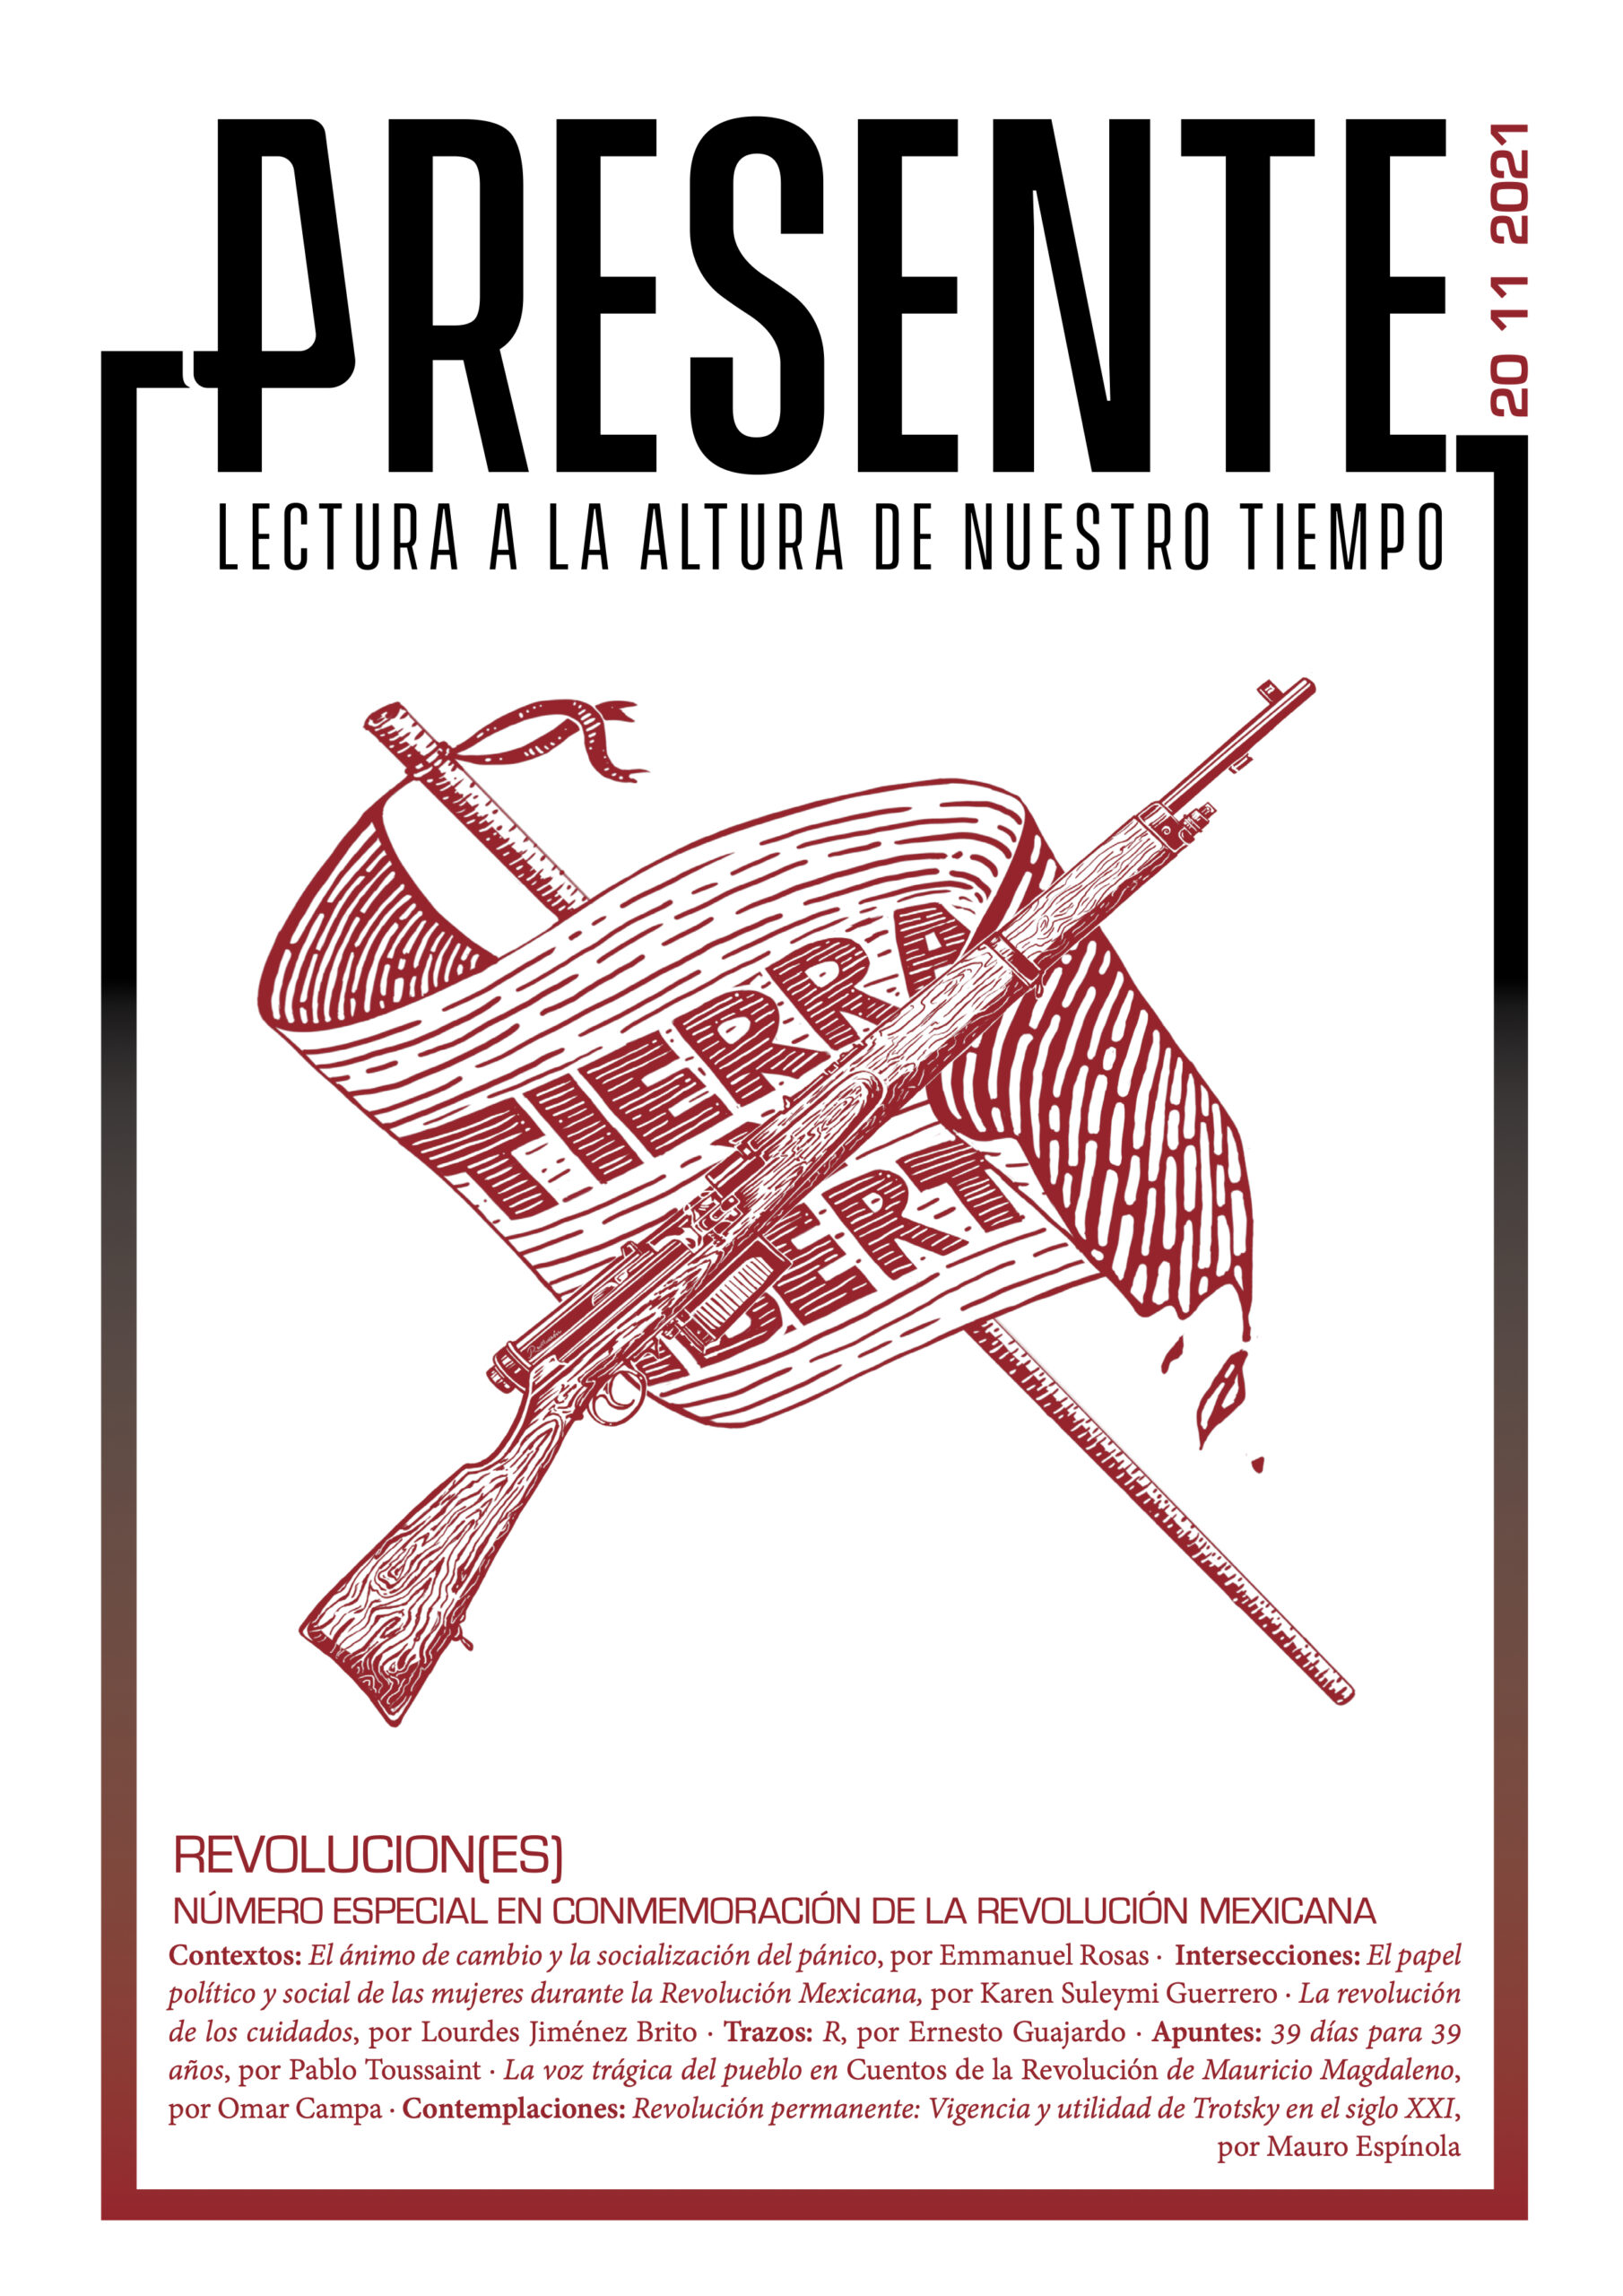 Portada del primer número extraordinario de la Revista Presente, que lleva por título "Revolucion(es)", que se lee: "Revoluciones".